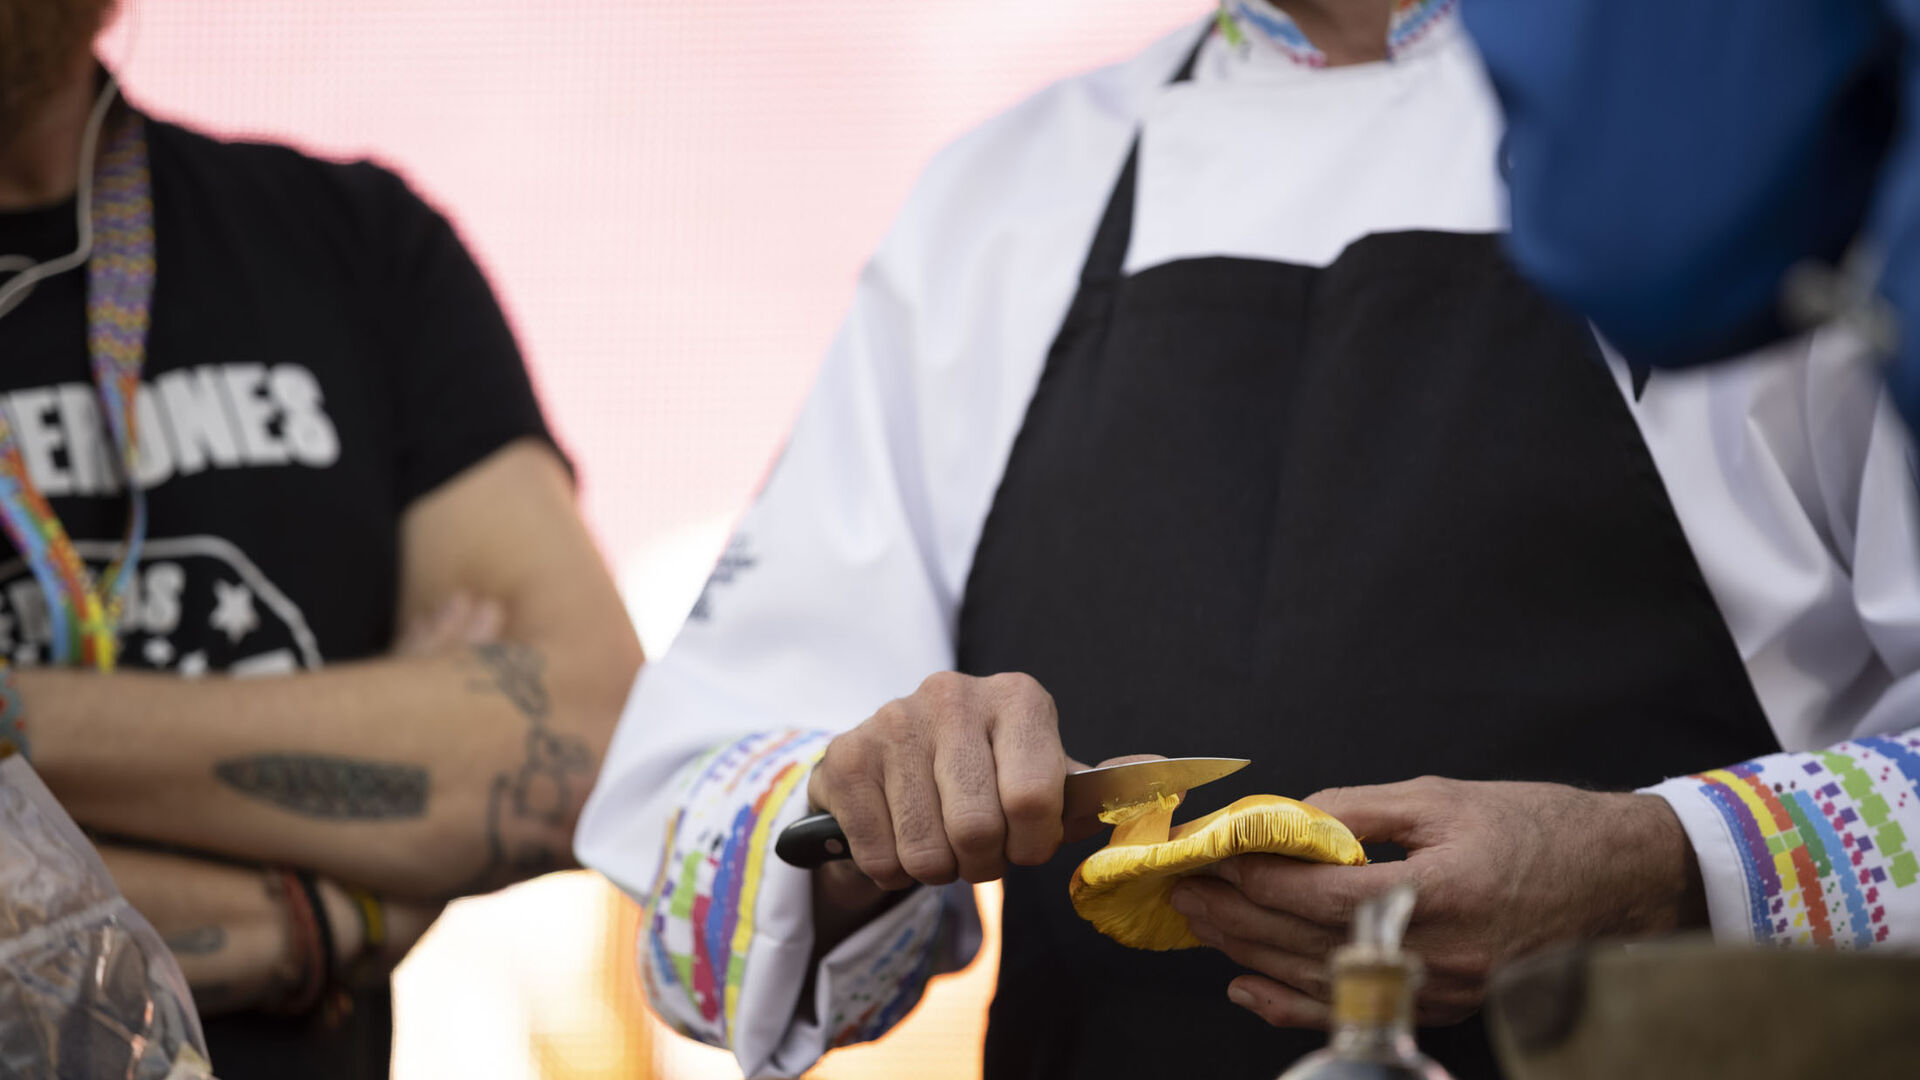 Los mejores chefs cocinan en la calle: Restaurante Montecruz